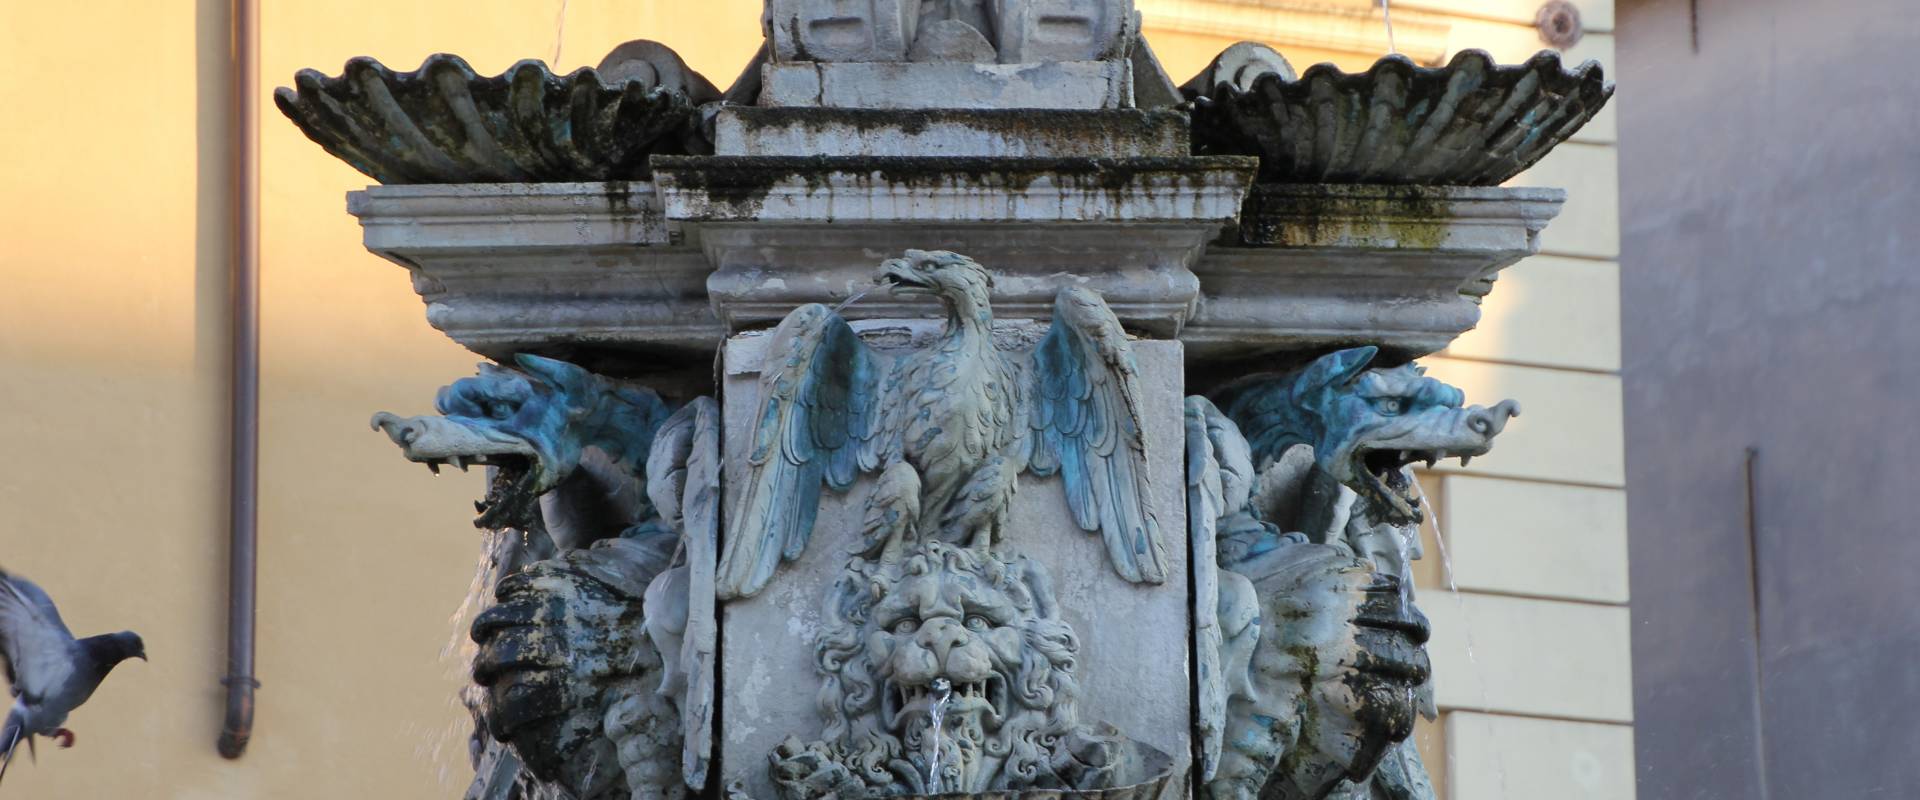 Faenza, fontana monumentale (04) foto di Gianni Careddu